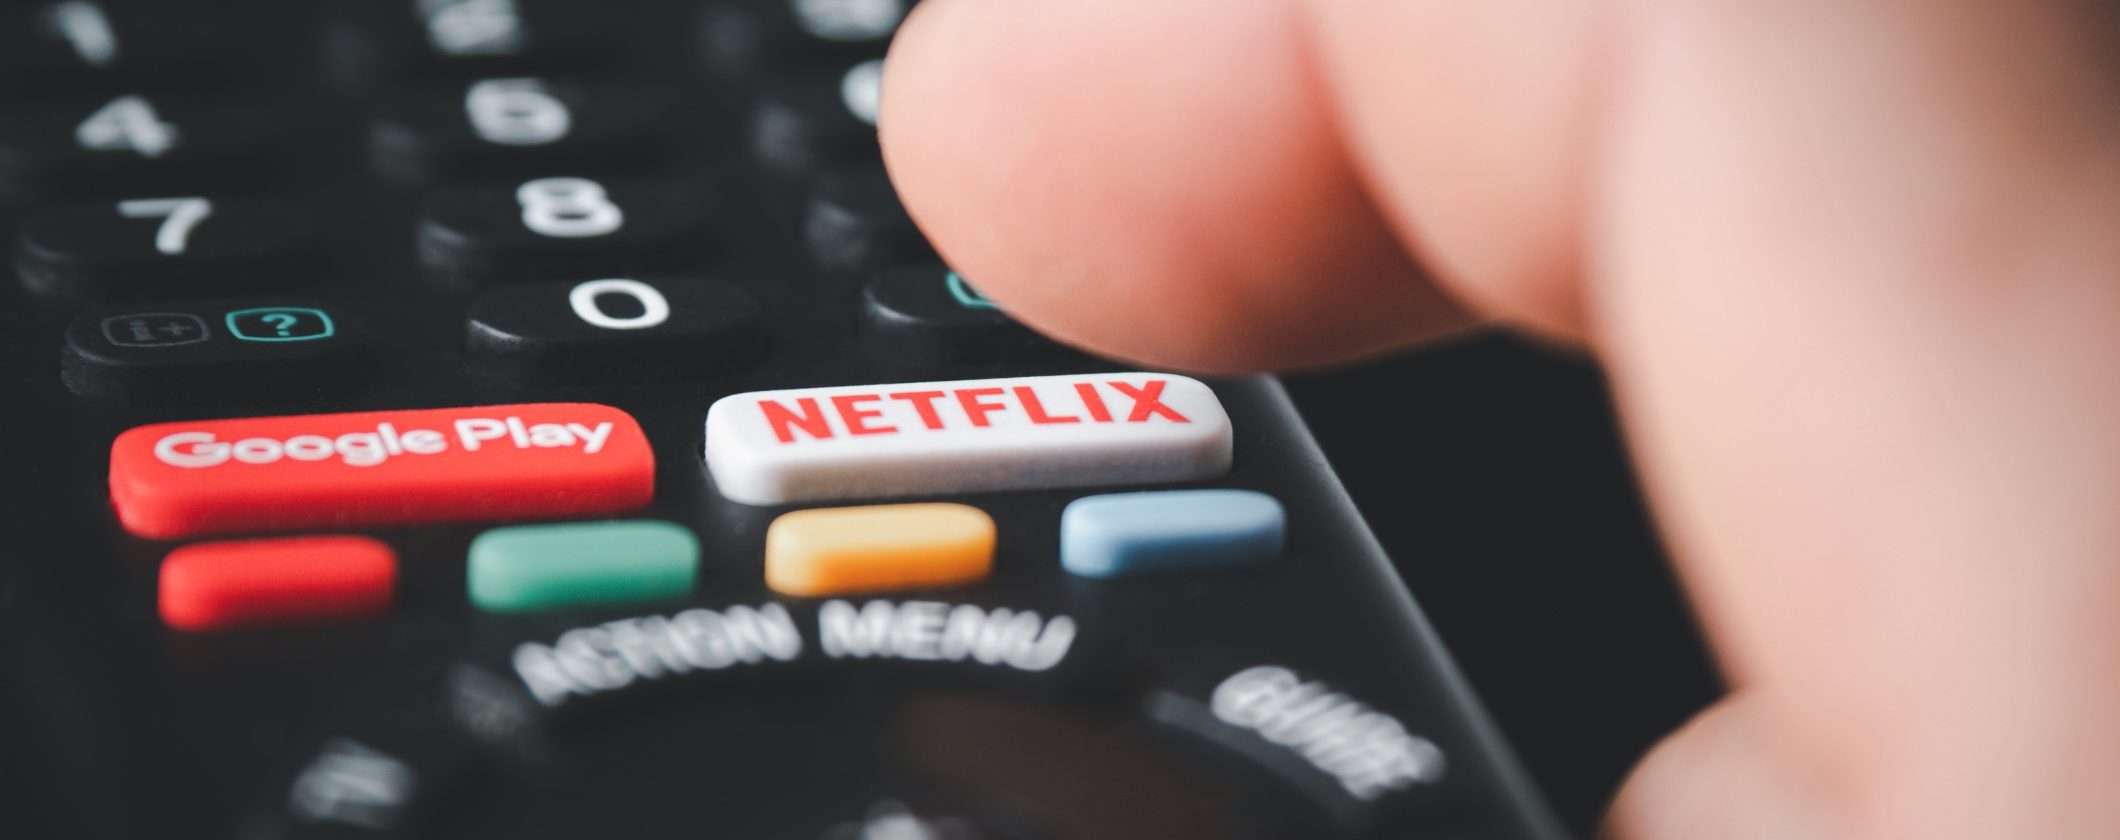 Digitale terrestre: addio tasti Netflix e Prime Video sul telecomando?